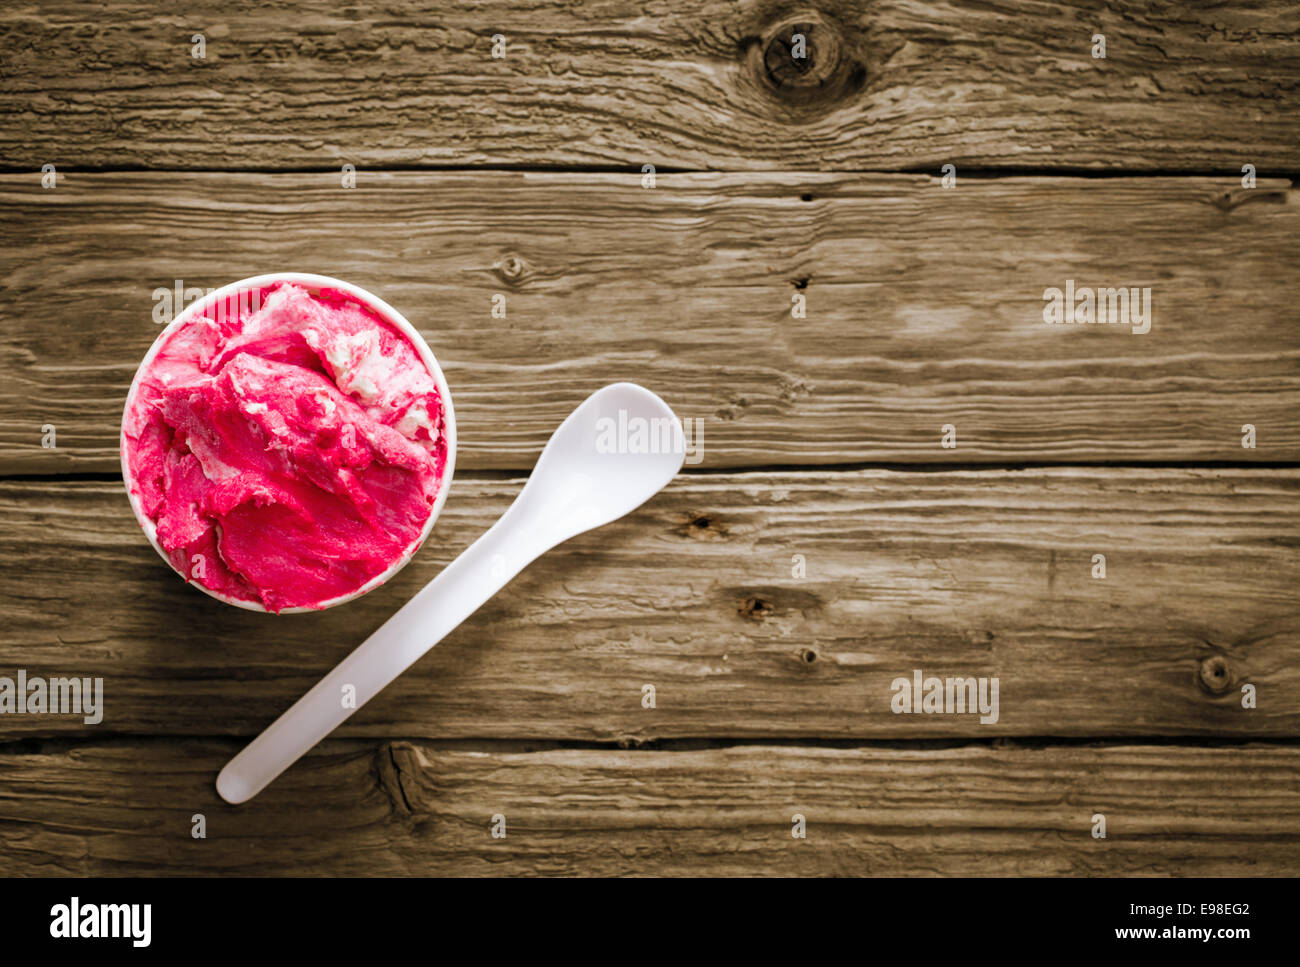 Appetitlich Wanne mit hell rosa Beeren-Eis auf einem rustikalen Holztisch mit einem Einweg-Plastik Löffel für einen erfrischenden Sommer-snack Stockfoto